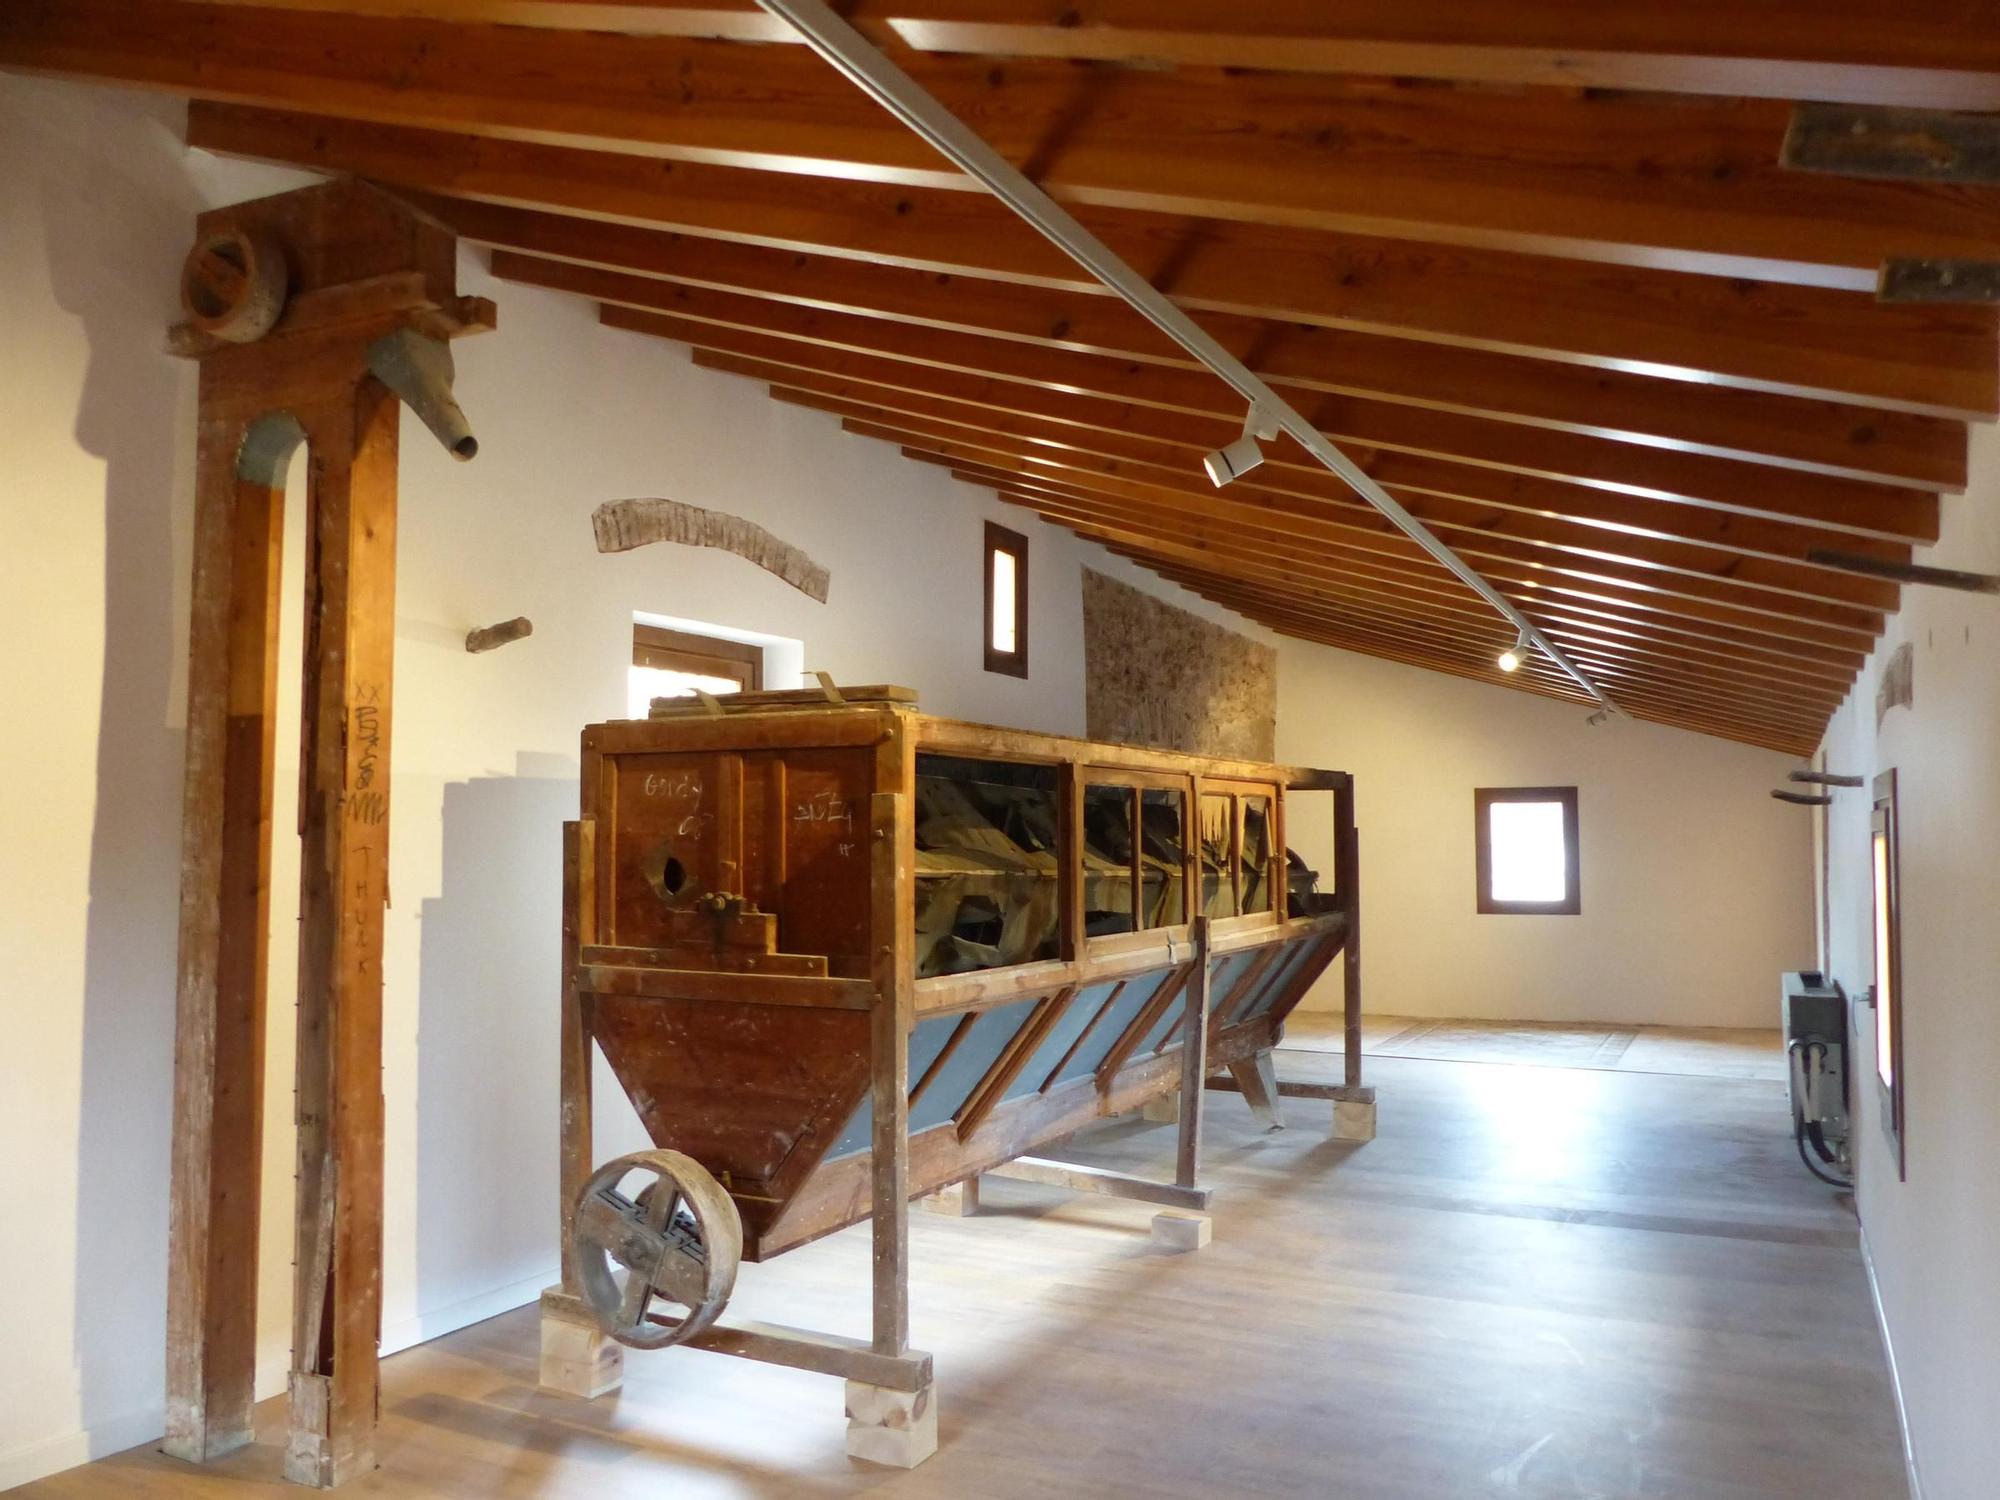 Una de las piezas recuperadas y que se encuentran en el interior del Segon Molí de Castelló.